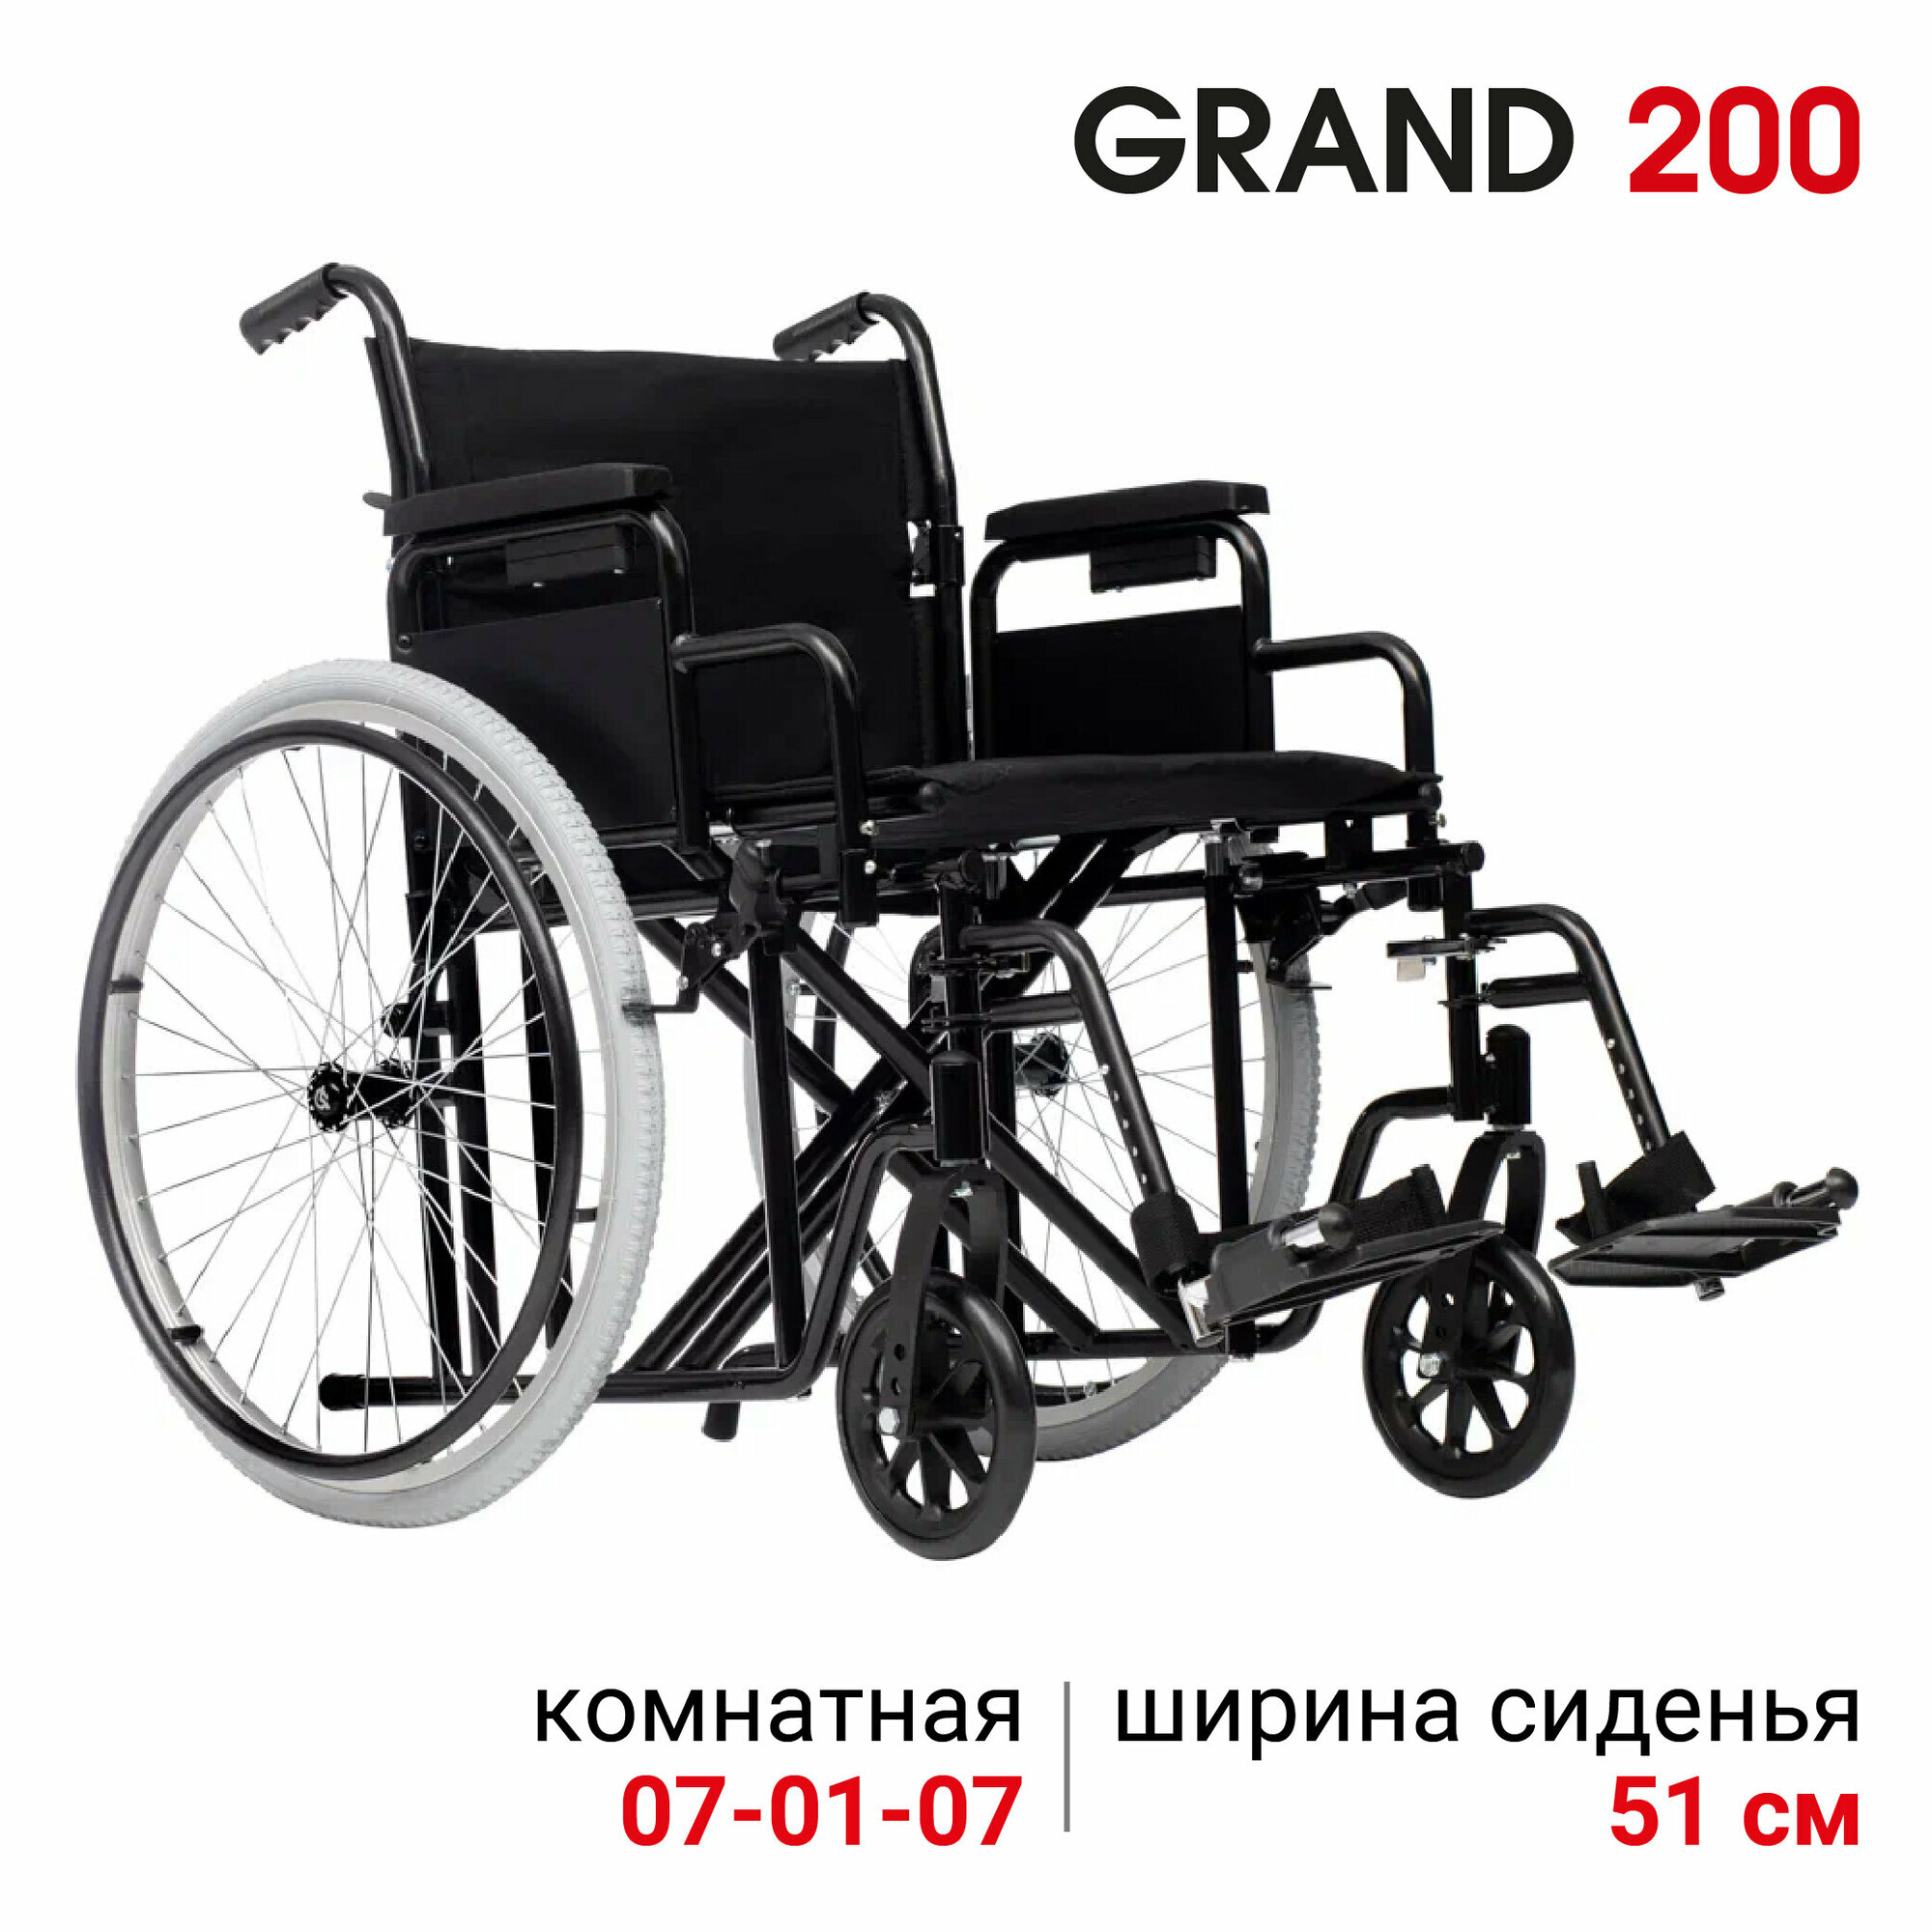 Кресло-коляска инвалидная комнатная механическая повышенной грузоподъемности Ortonica Trend 25/Grand 200 51UU ширина сиденья 51 см цельнолитые колеса, код 07-01-08